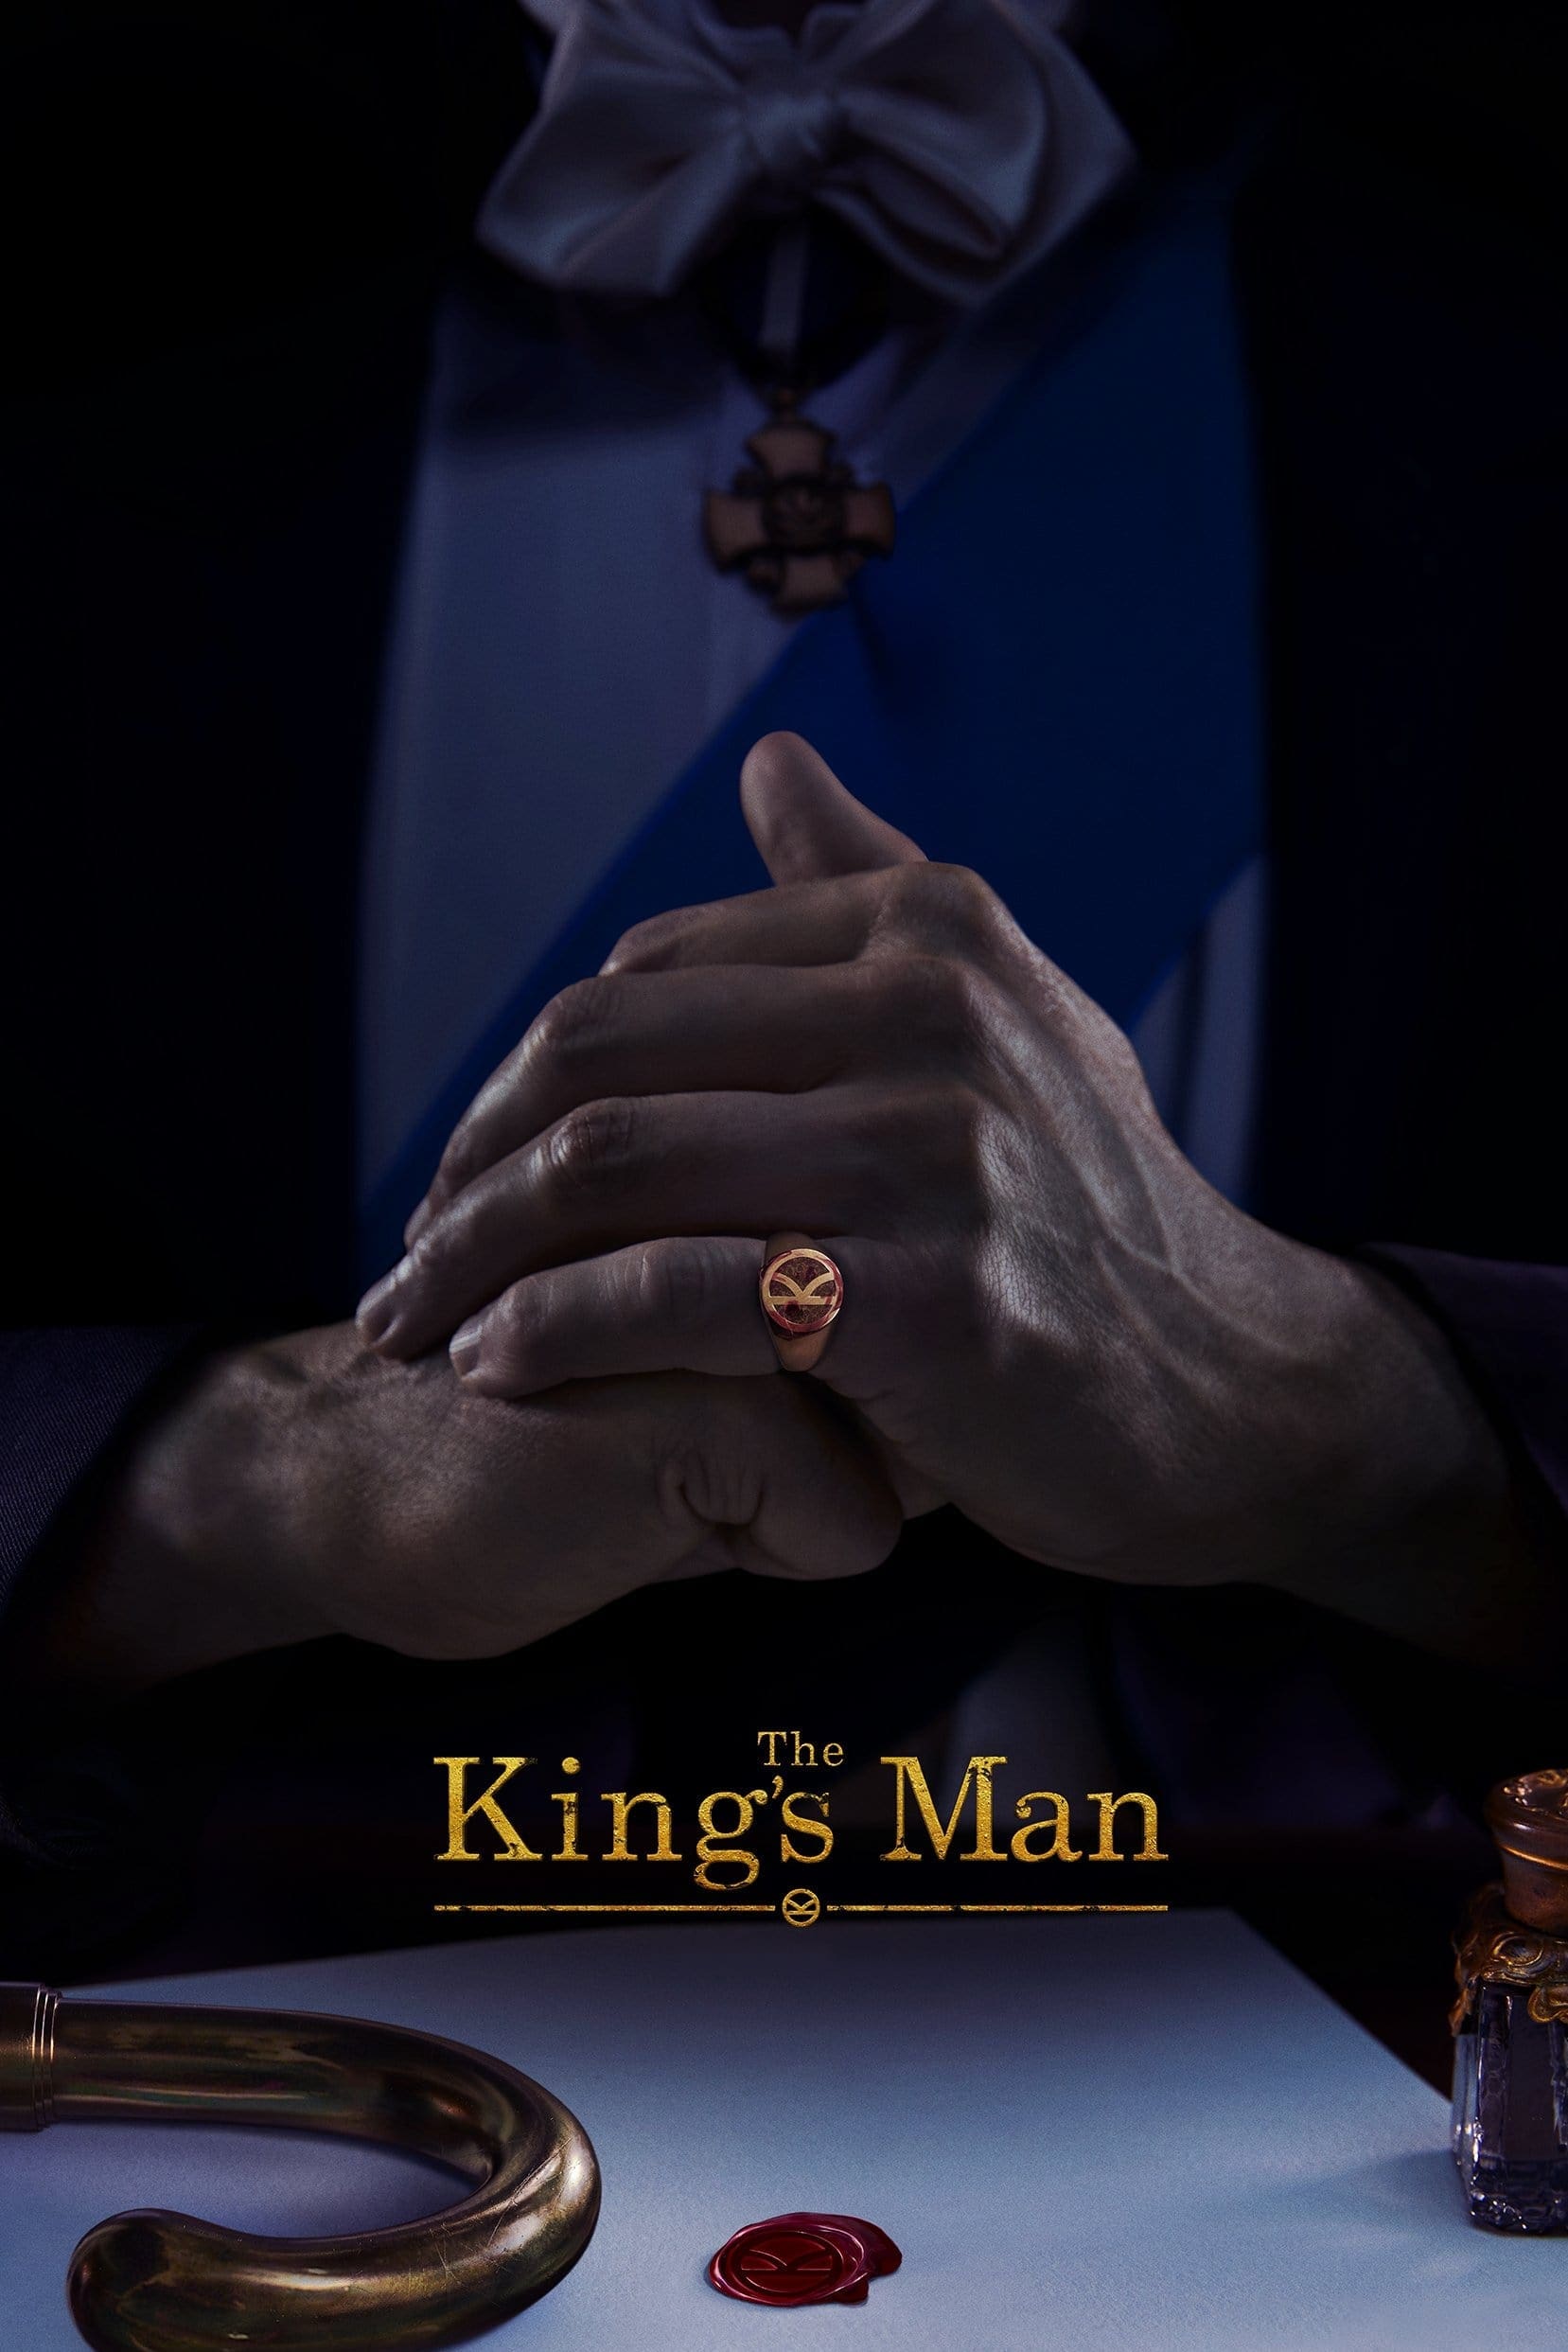 Poster de la película "King's Man: El Origen"